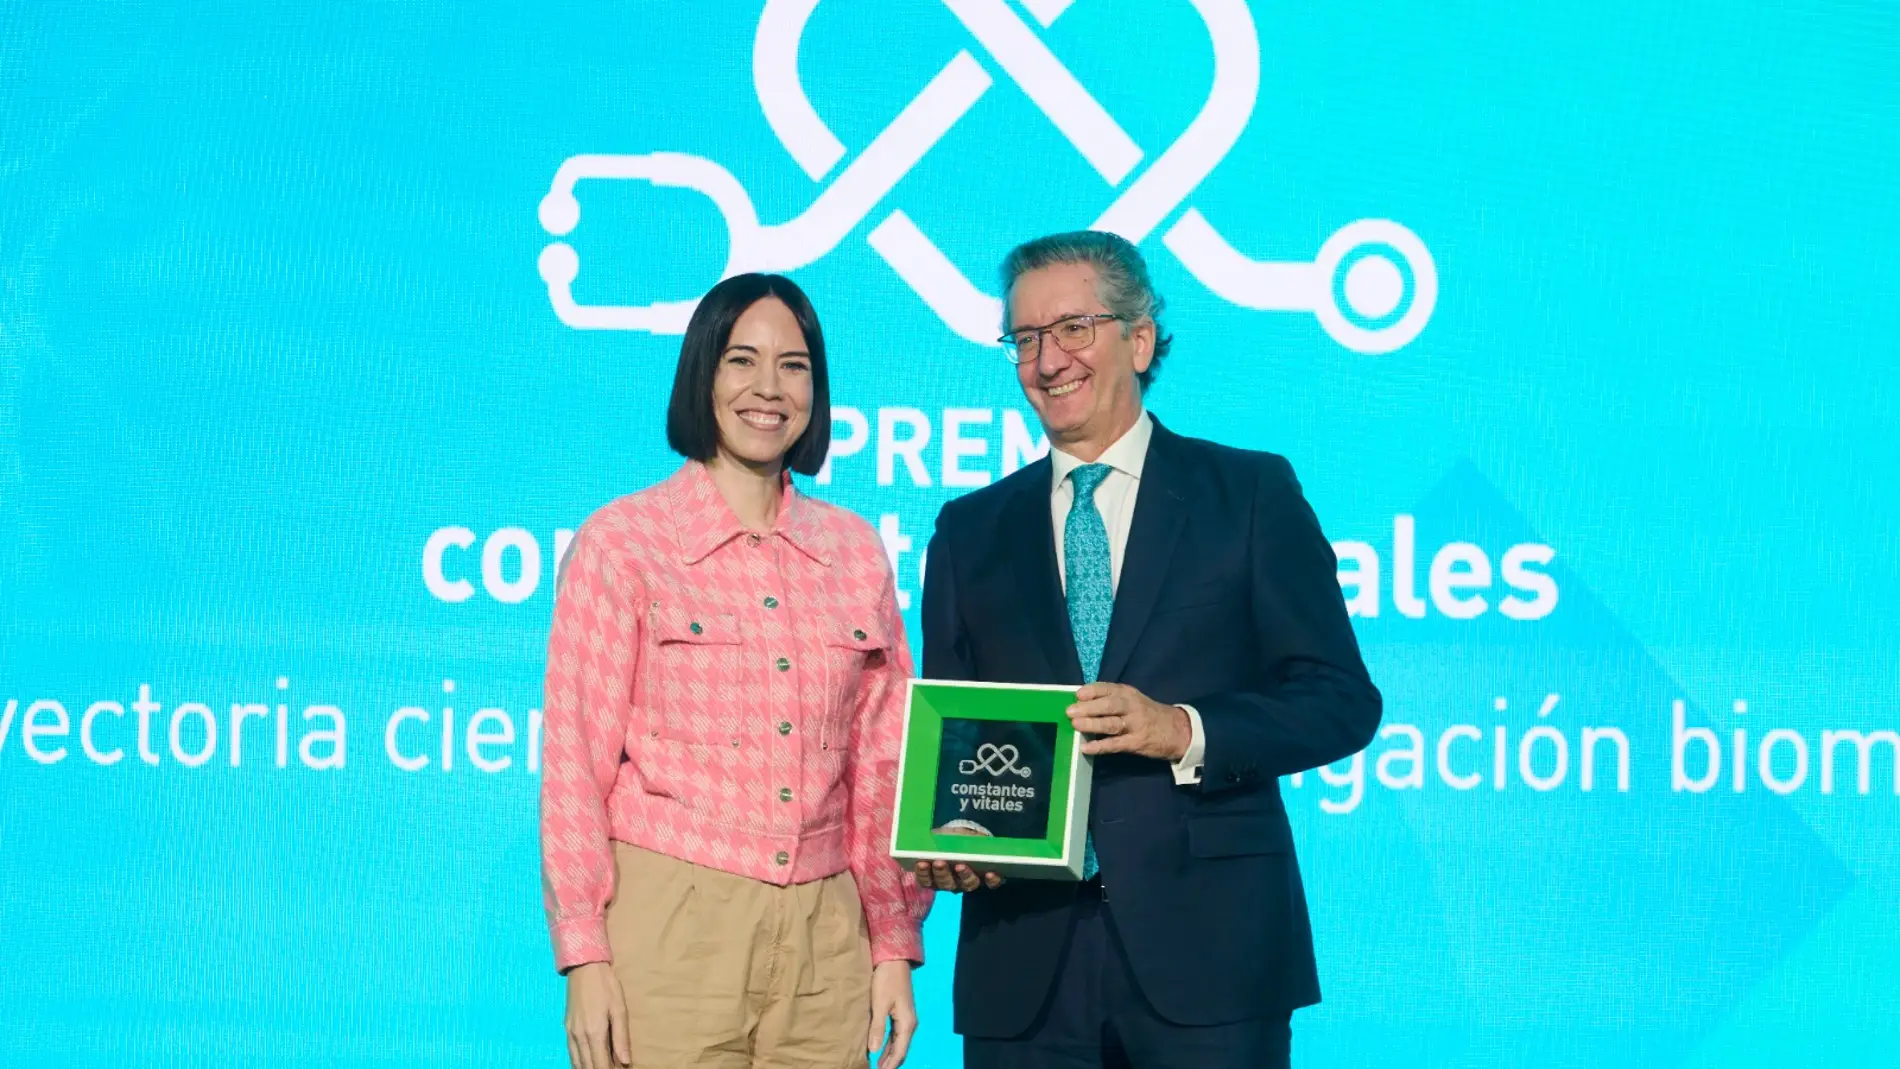 El Dr. San Miguel recibe el Premio Constantes y Vitales de manos de Diana Morant, ministra de Ciencia e Innovación